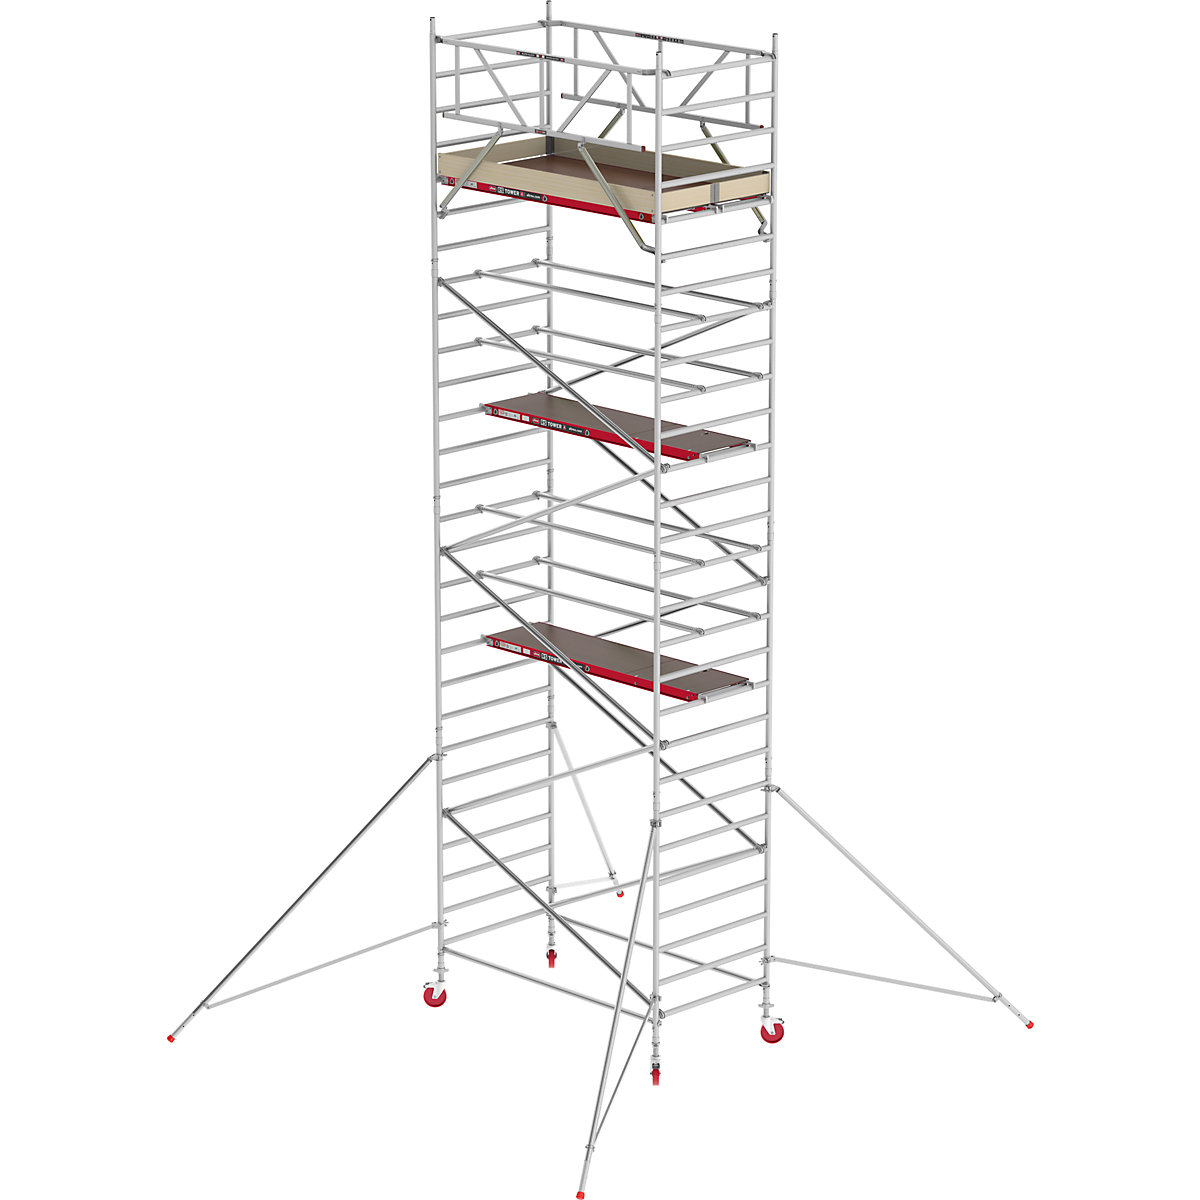 Pomičen oder RS TOWER 42, širok – Altrex, lesena ploščad, dolžina 1,85 m, delovna višina 9,20 m